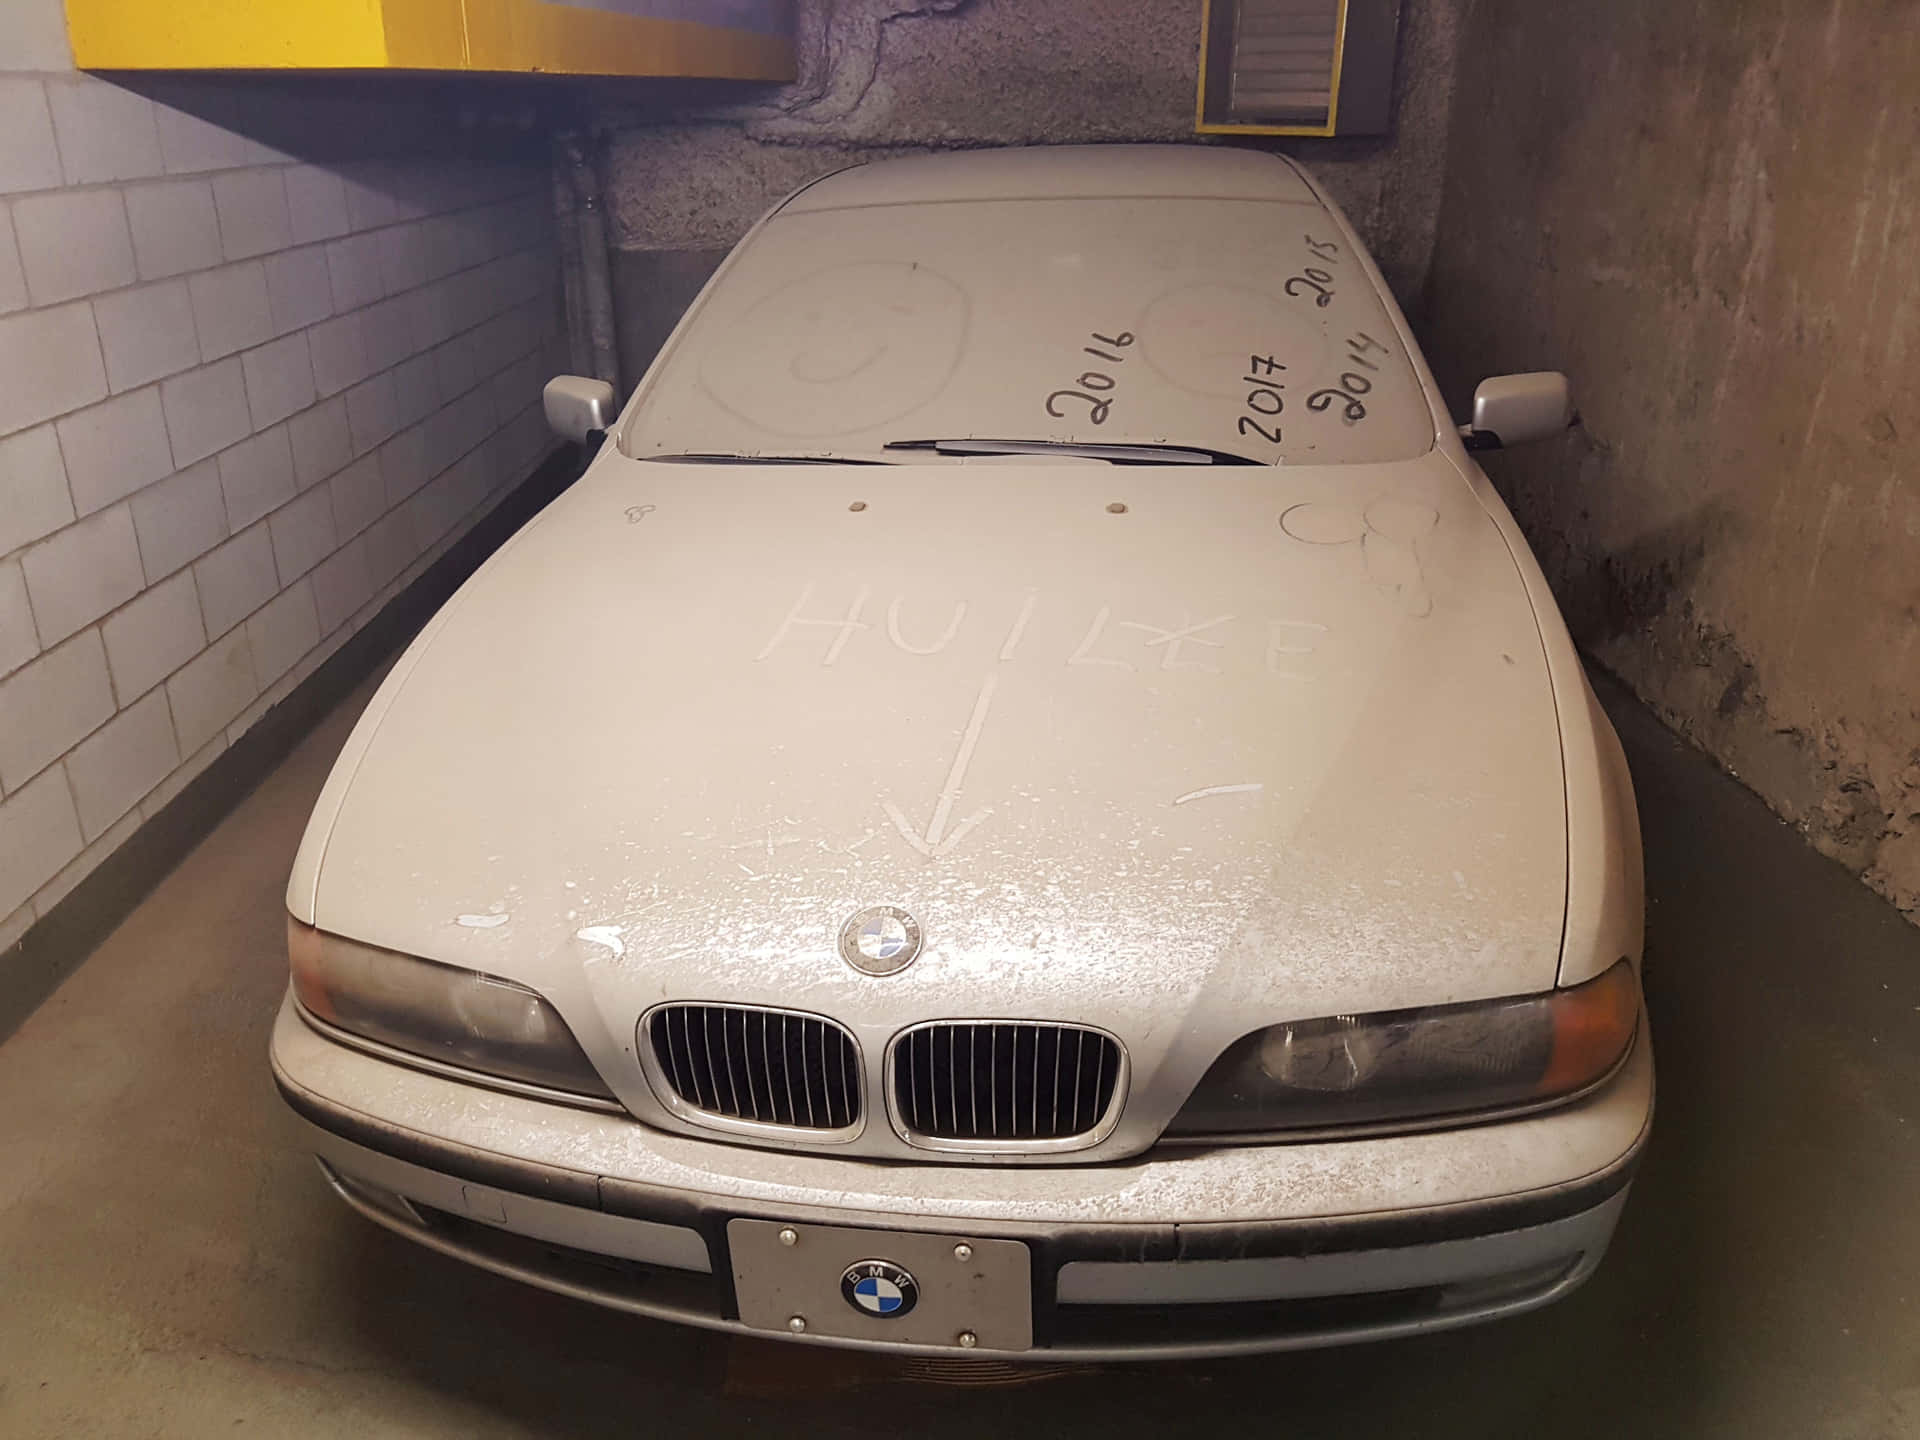 Unamacchina Bianca È Parcheggiata In Un Garage Auto.